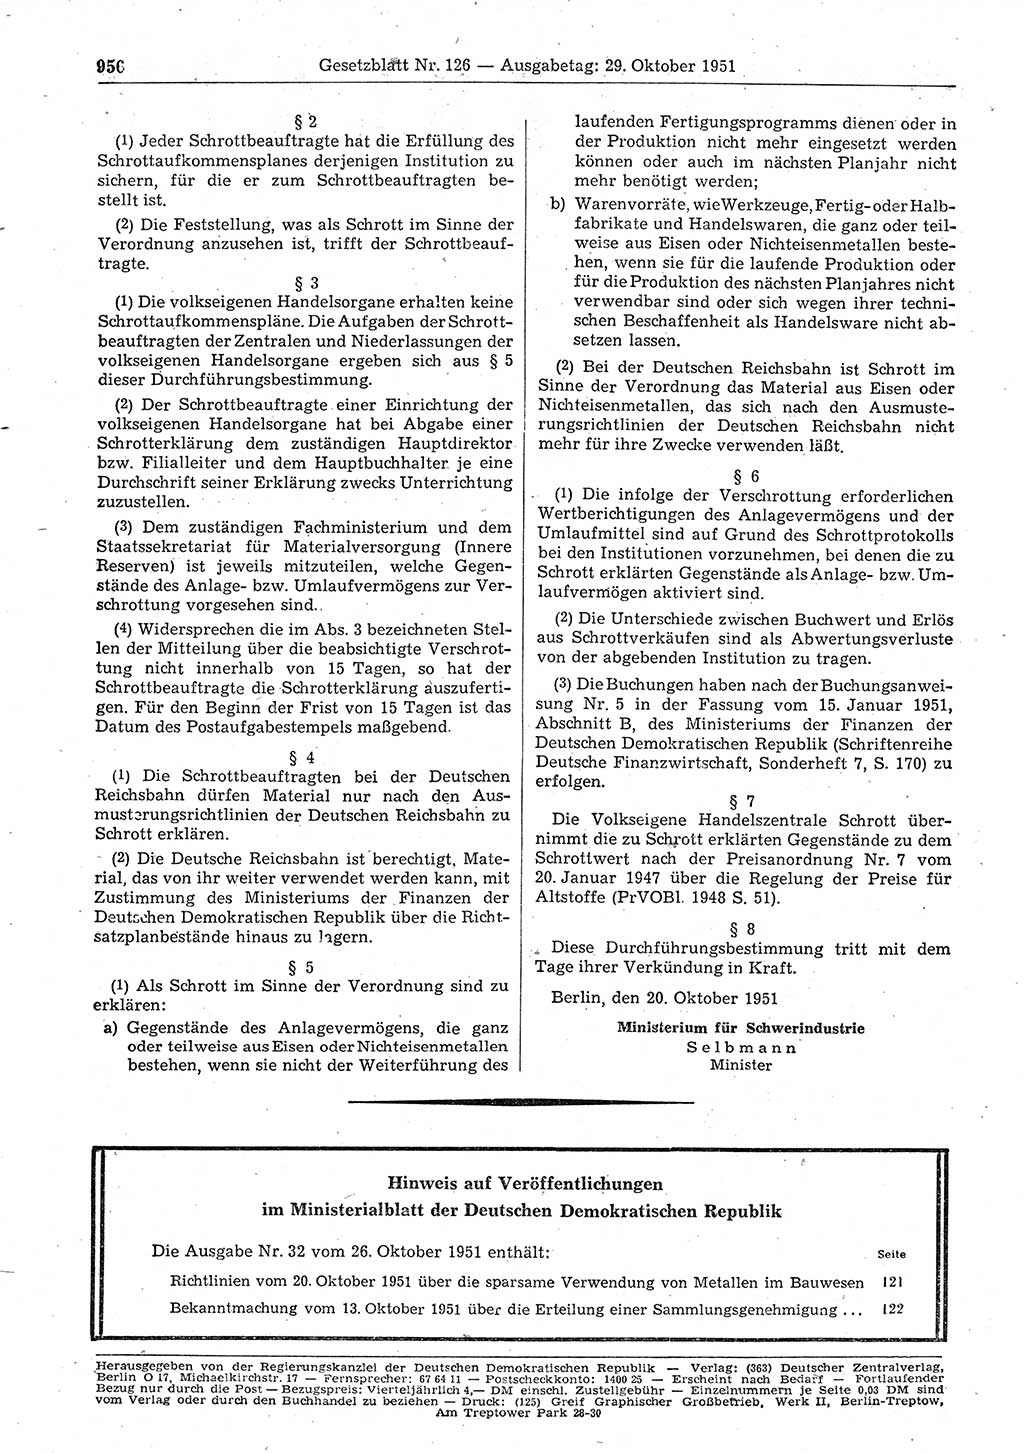 Gesetzblatt (GBl.) der Deutschen Demokratischen Republik (DDR) 1951, Seite 956 (GBl. DDR 1951, S. 956)